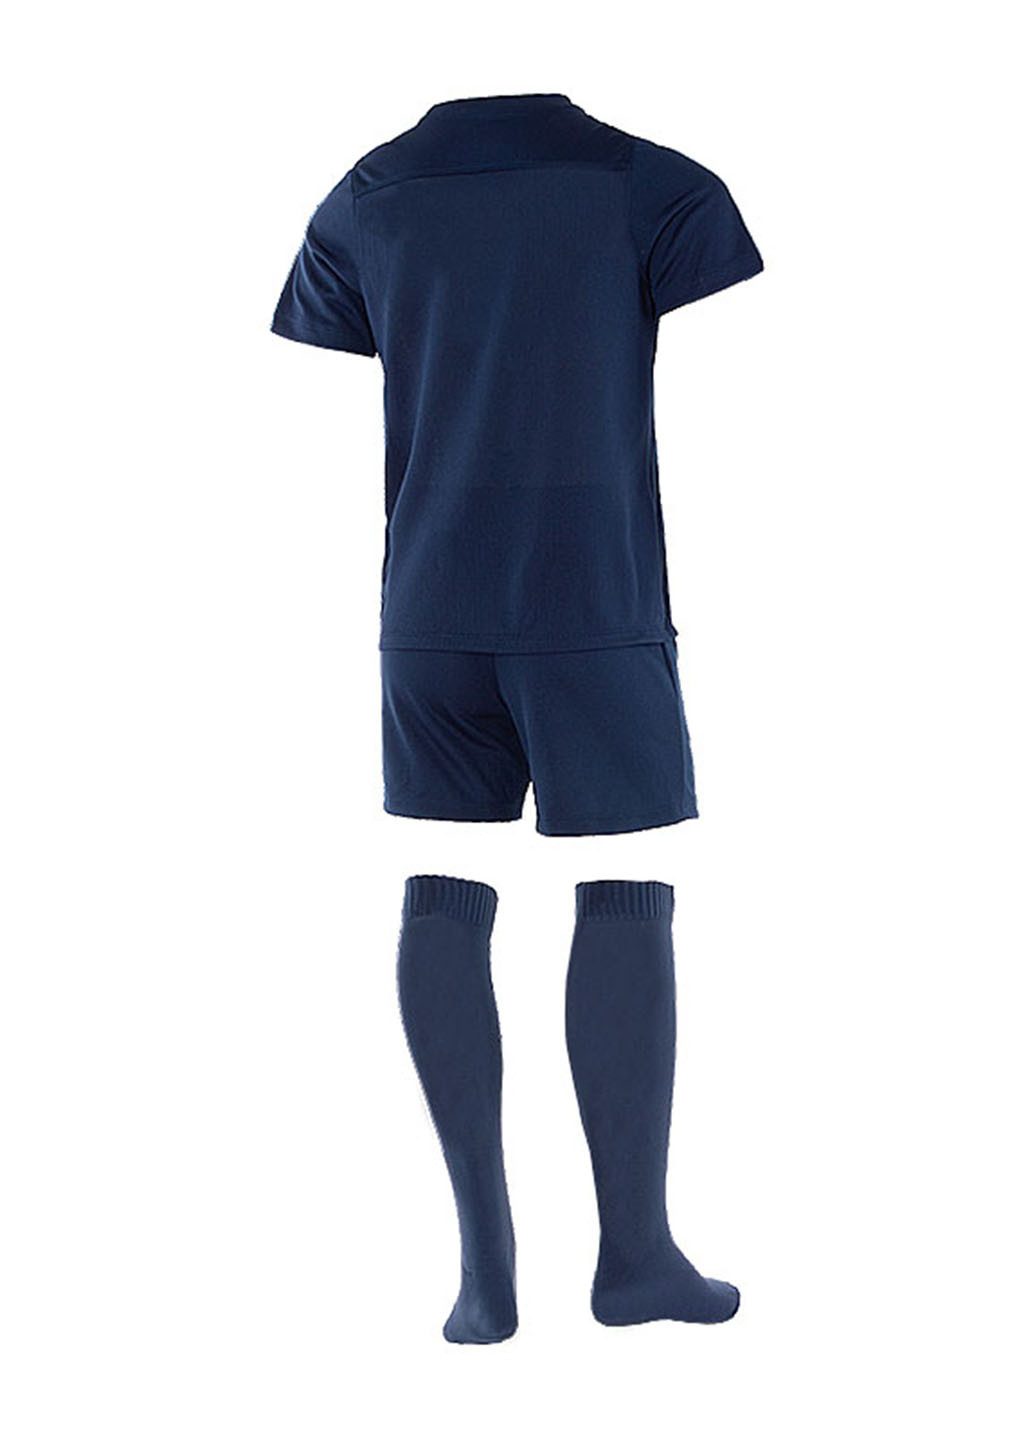 Темно-синий демисезонный костюм (футболка, шорты, гетры) Nike LK NK DRY PARK20 KIT SET K